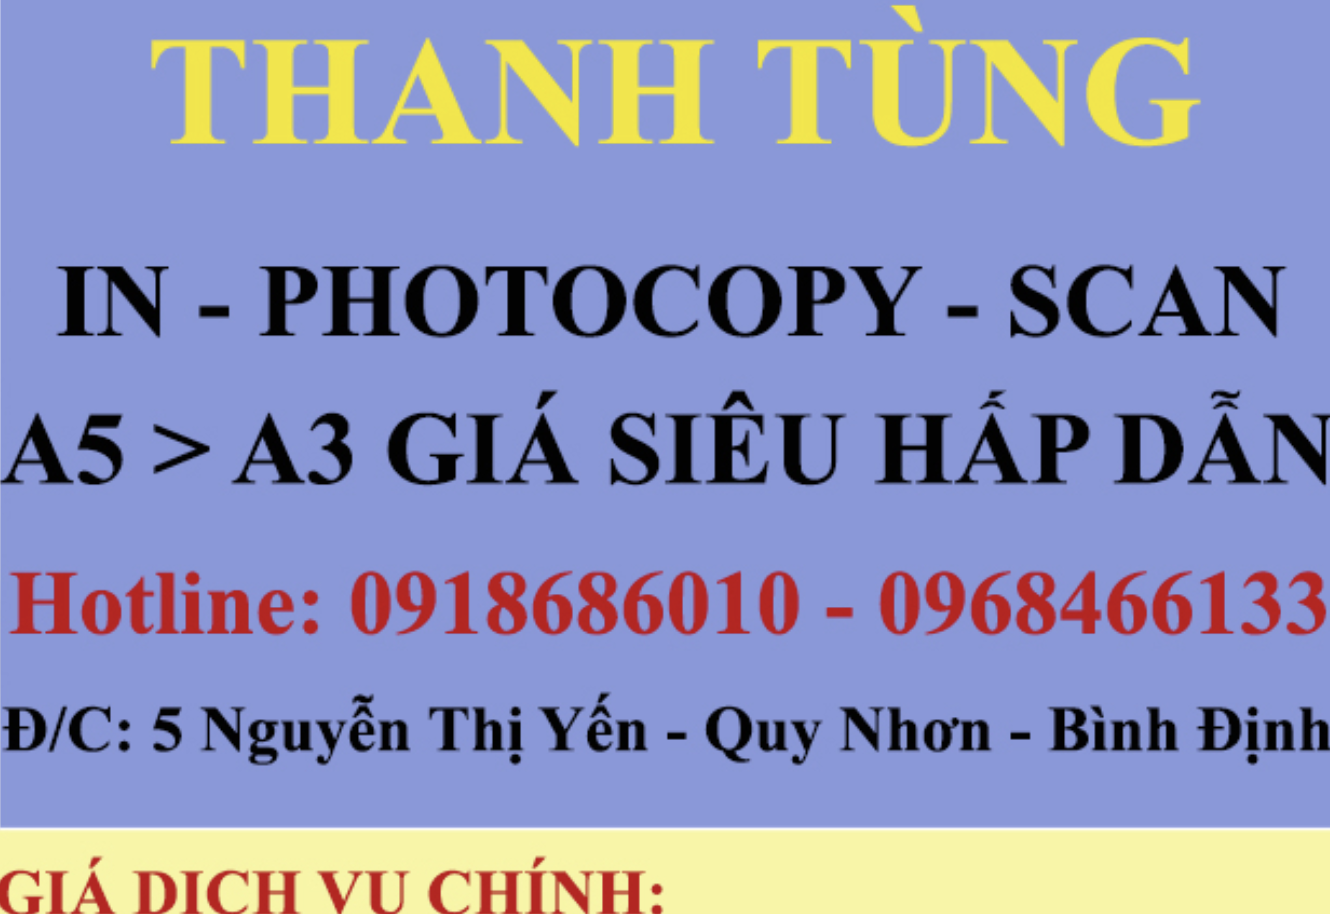 Photocopy - Scan - In Thanh Tùng ảnh 1